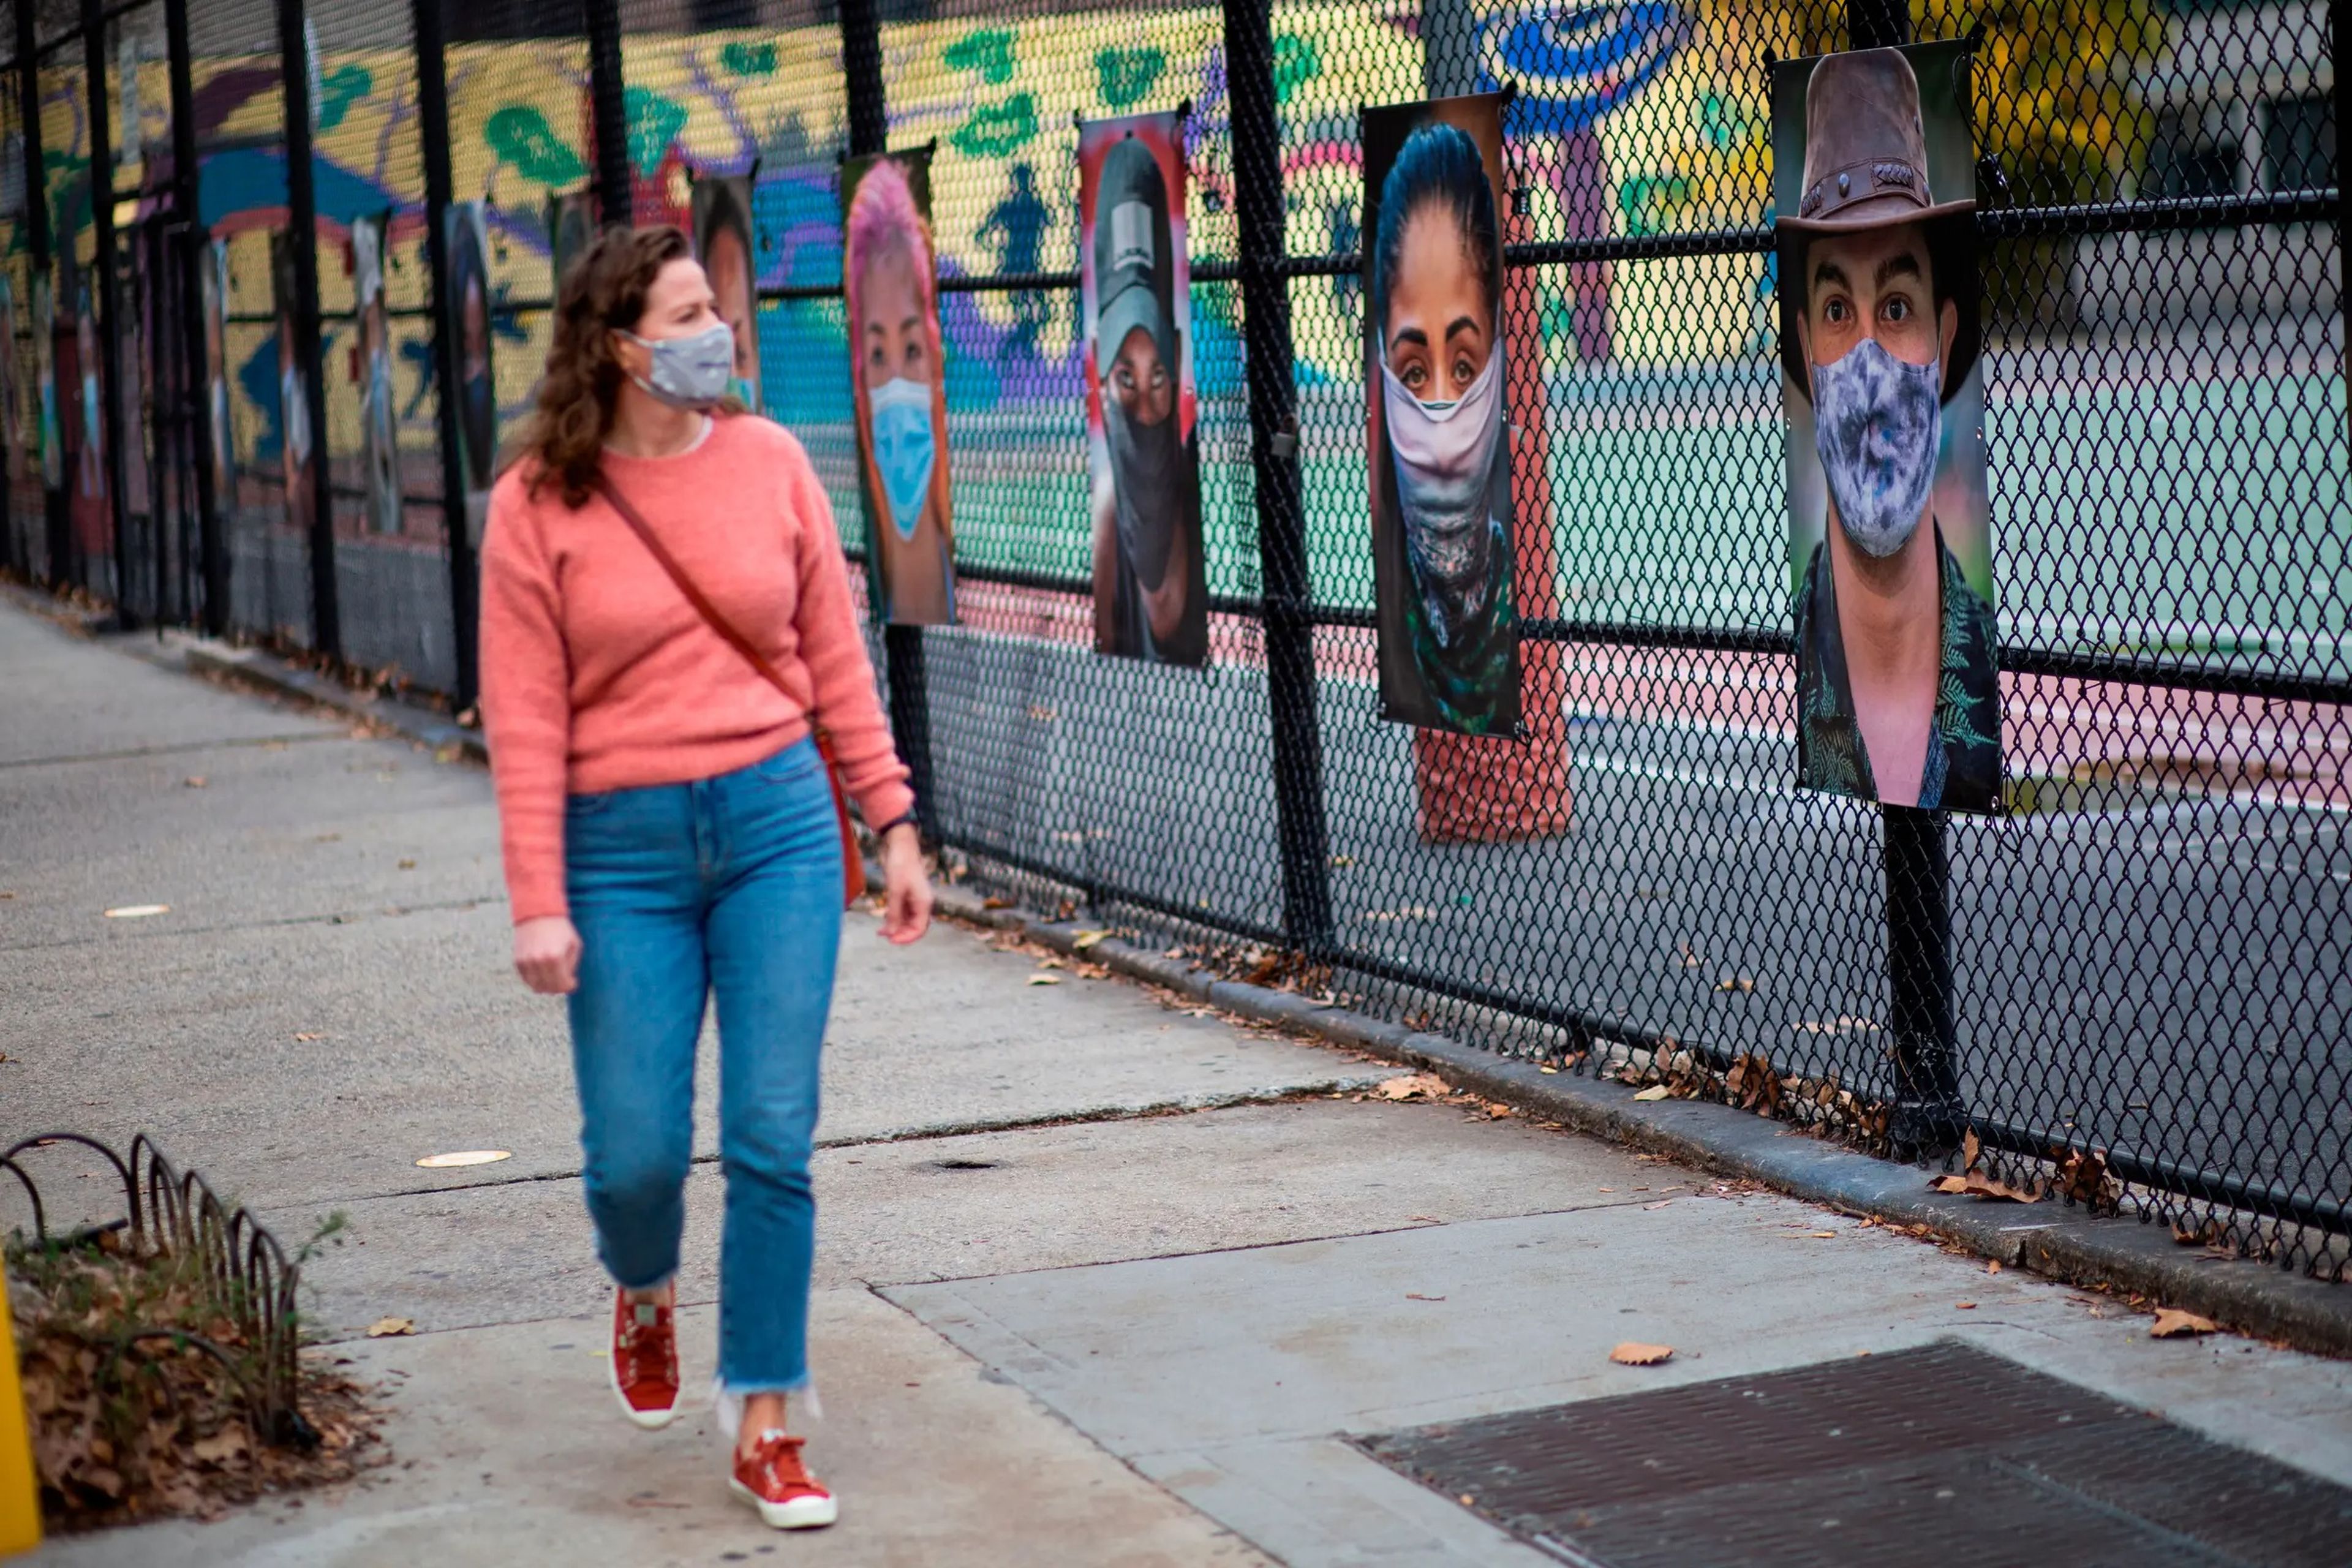 Una mujer camina junto a una exposición de arte en el Upper West Side de Manhattan, Nueva York, Estados Unidos, el 27 de noviembre de 2020.